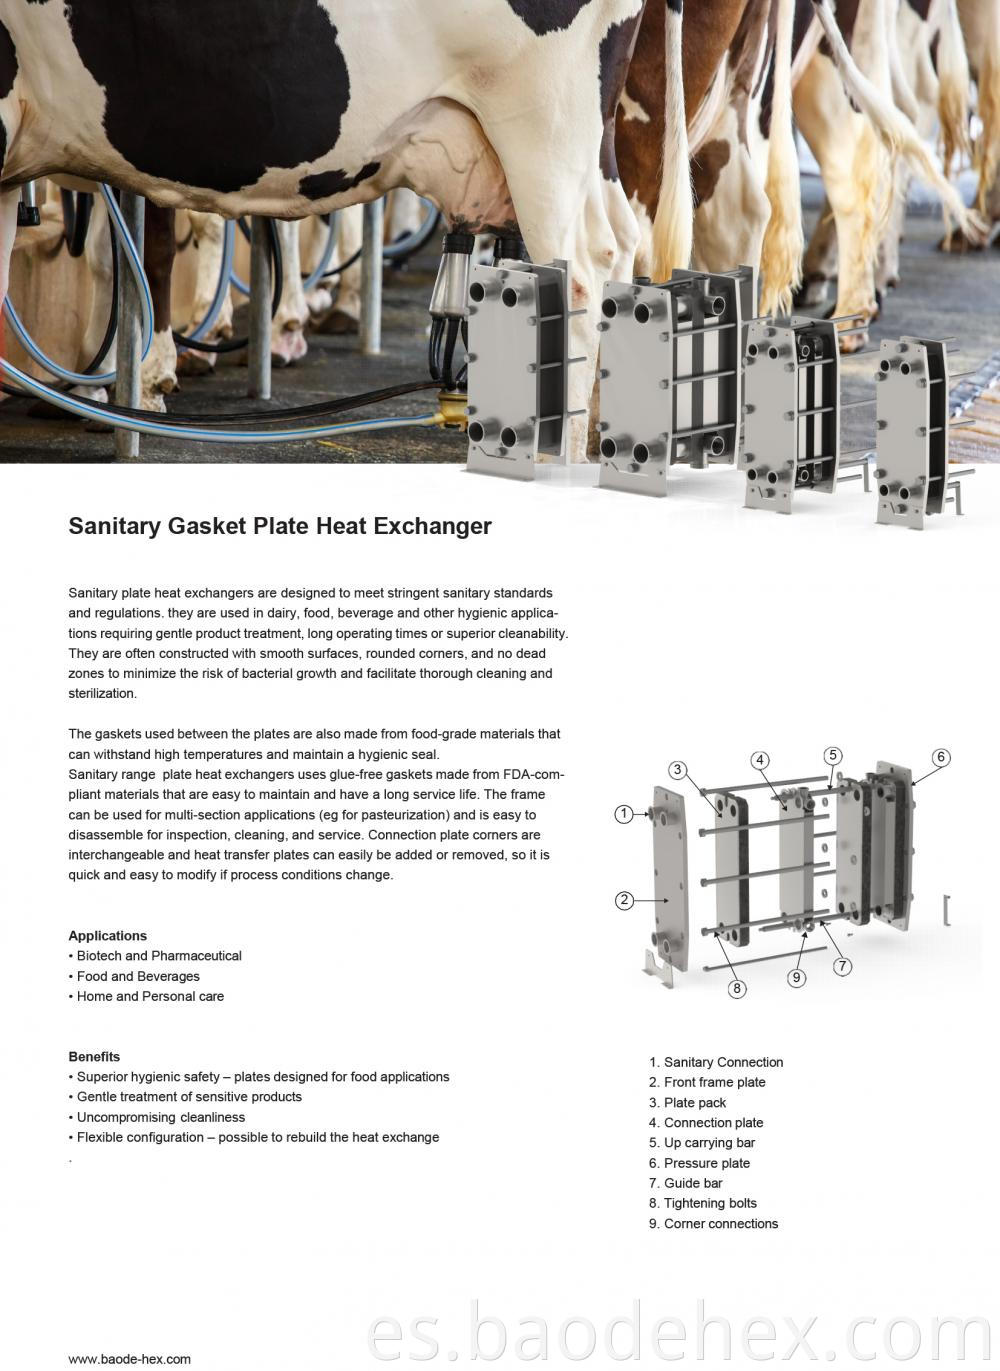 Sanitary Food Plate Heat Exchangers